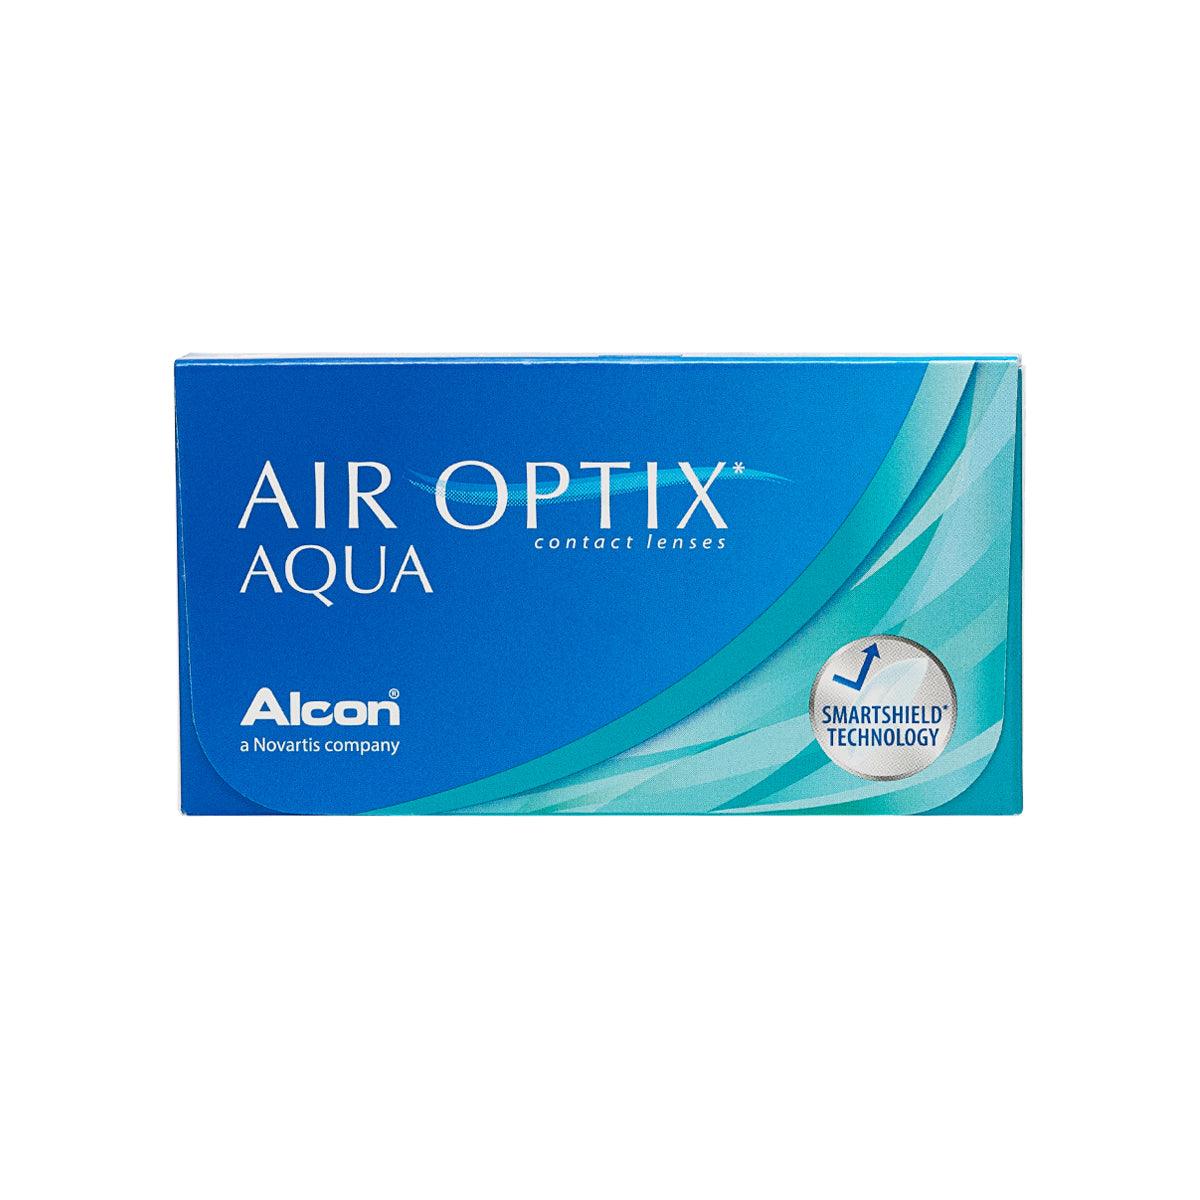 Air Optix Aqua - TA-TO.com